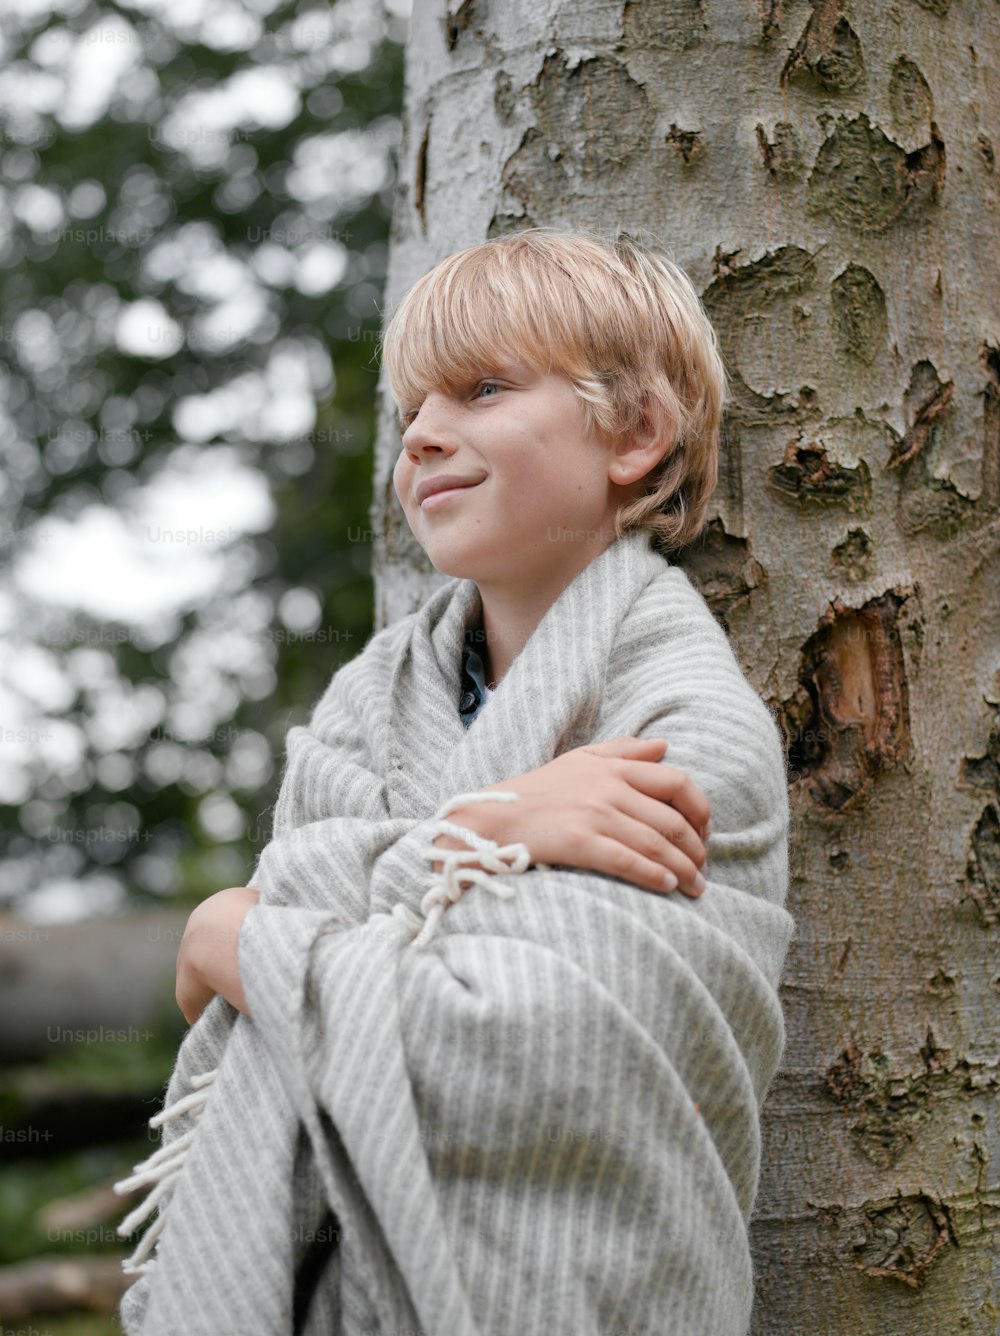 Un niño envuelto en una manta apoyado contra un árbol